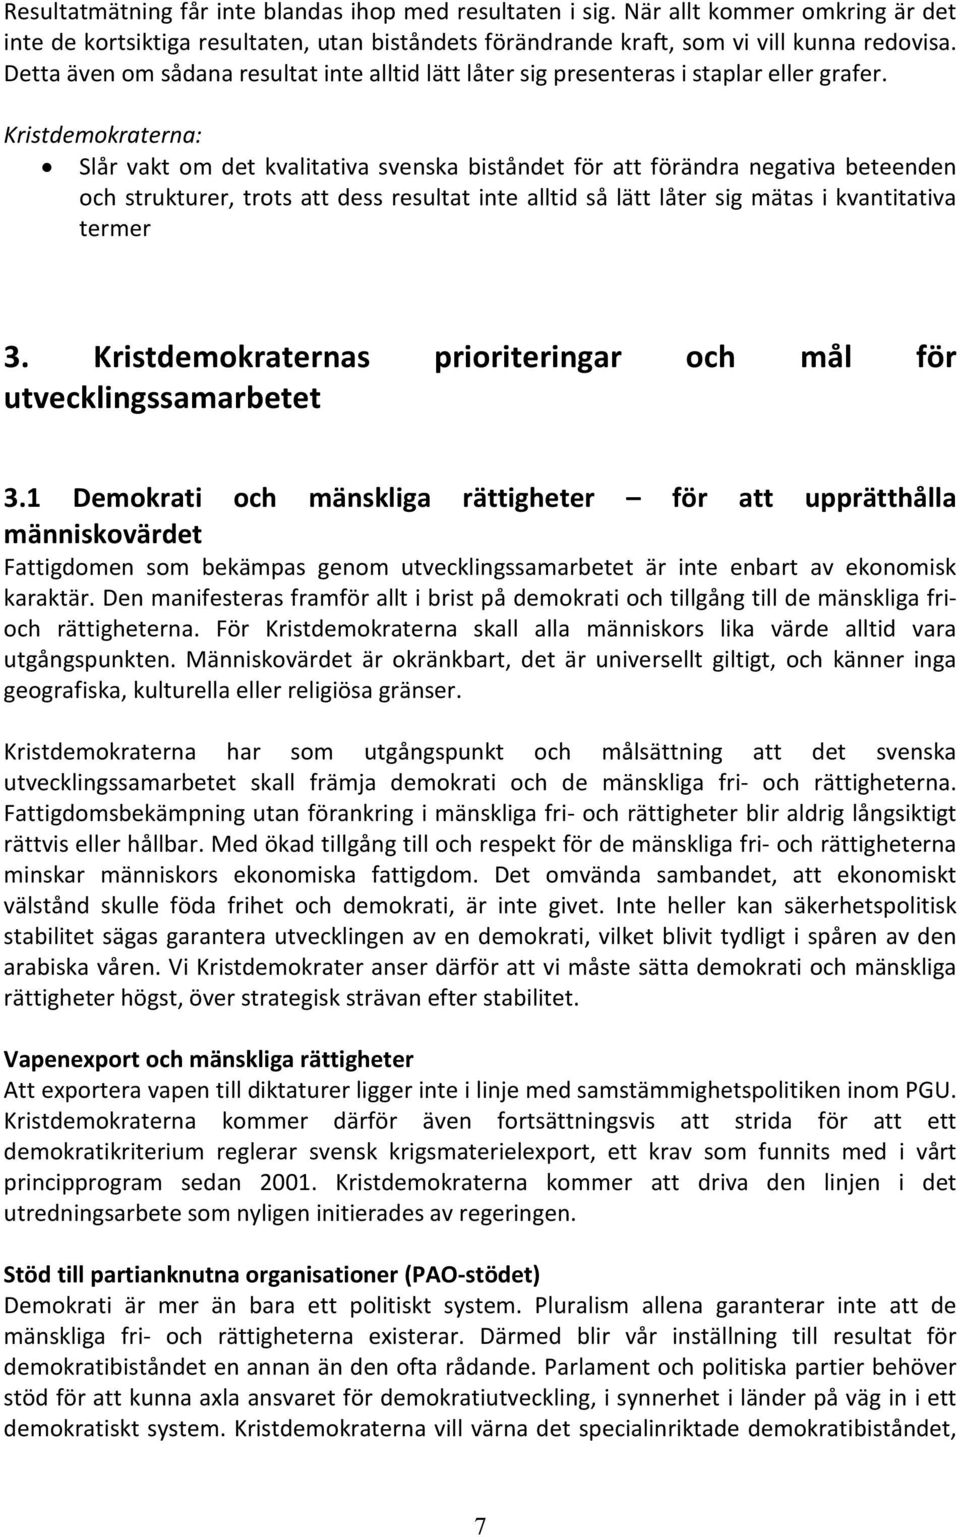 Kristdemokraterna: Slår vakt om det kvalitativa svenska biståndet för att förändra negativa beteenden och strukturer, trots att dess resultat inte alltid så lätt låter sig mätas i kvantitativa termer